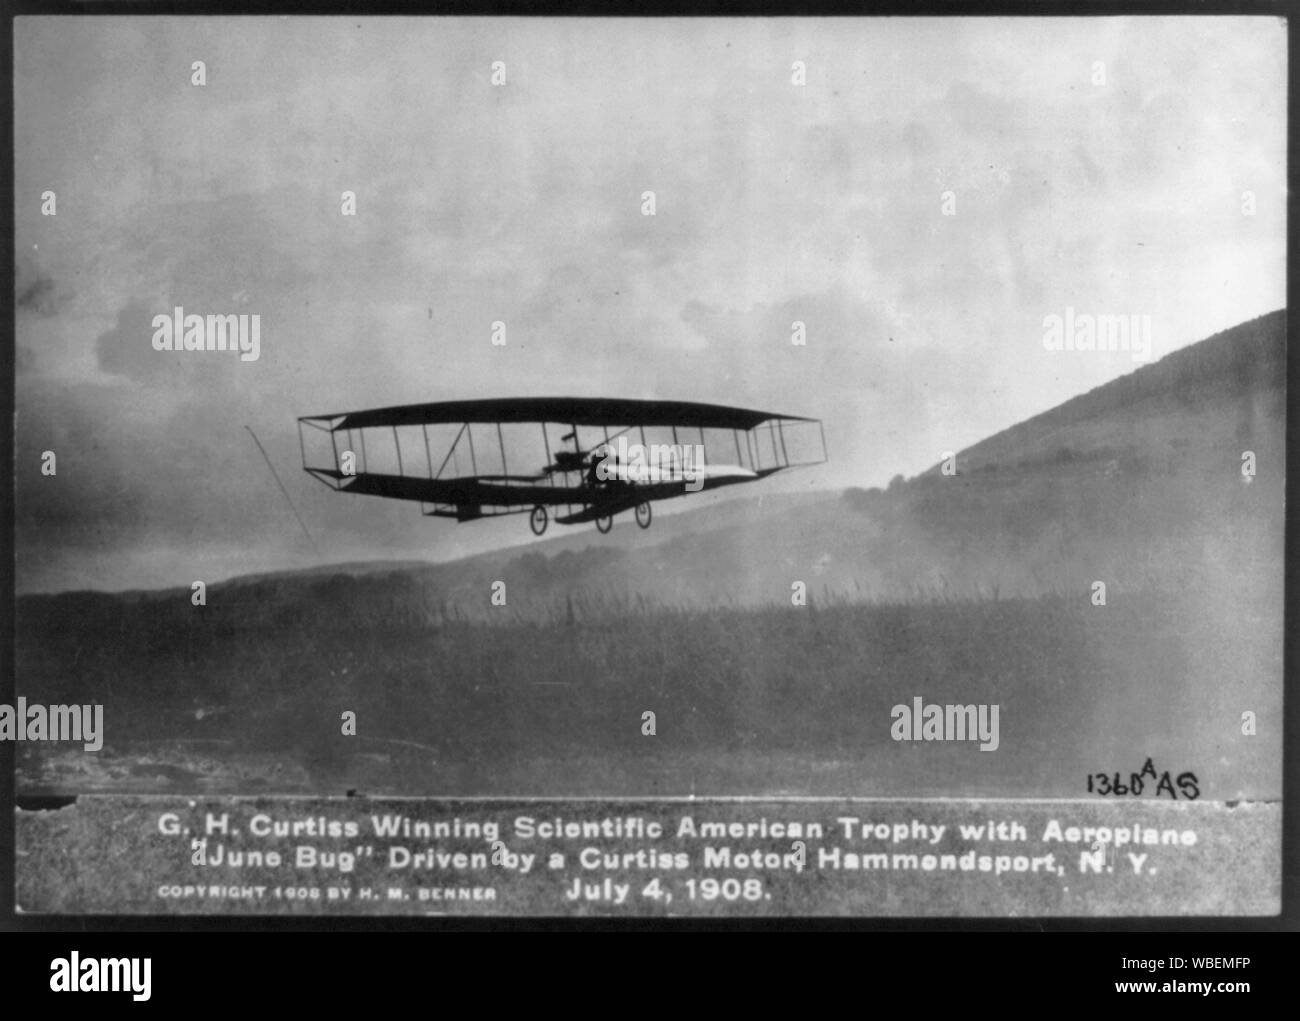 G.H. Curtiss vincendo Scientific American Trofeo con aereo giugno Bug, azionato da un motore Curtiss, Hammondsport, N.Y., 4 luglio 1908 Abstract/medio: 1 stampa fotografica. Foto Stock